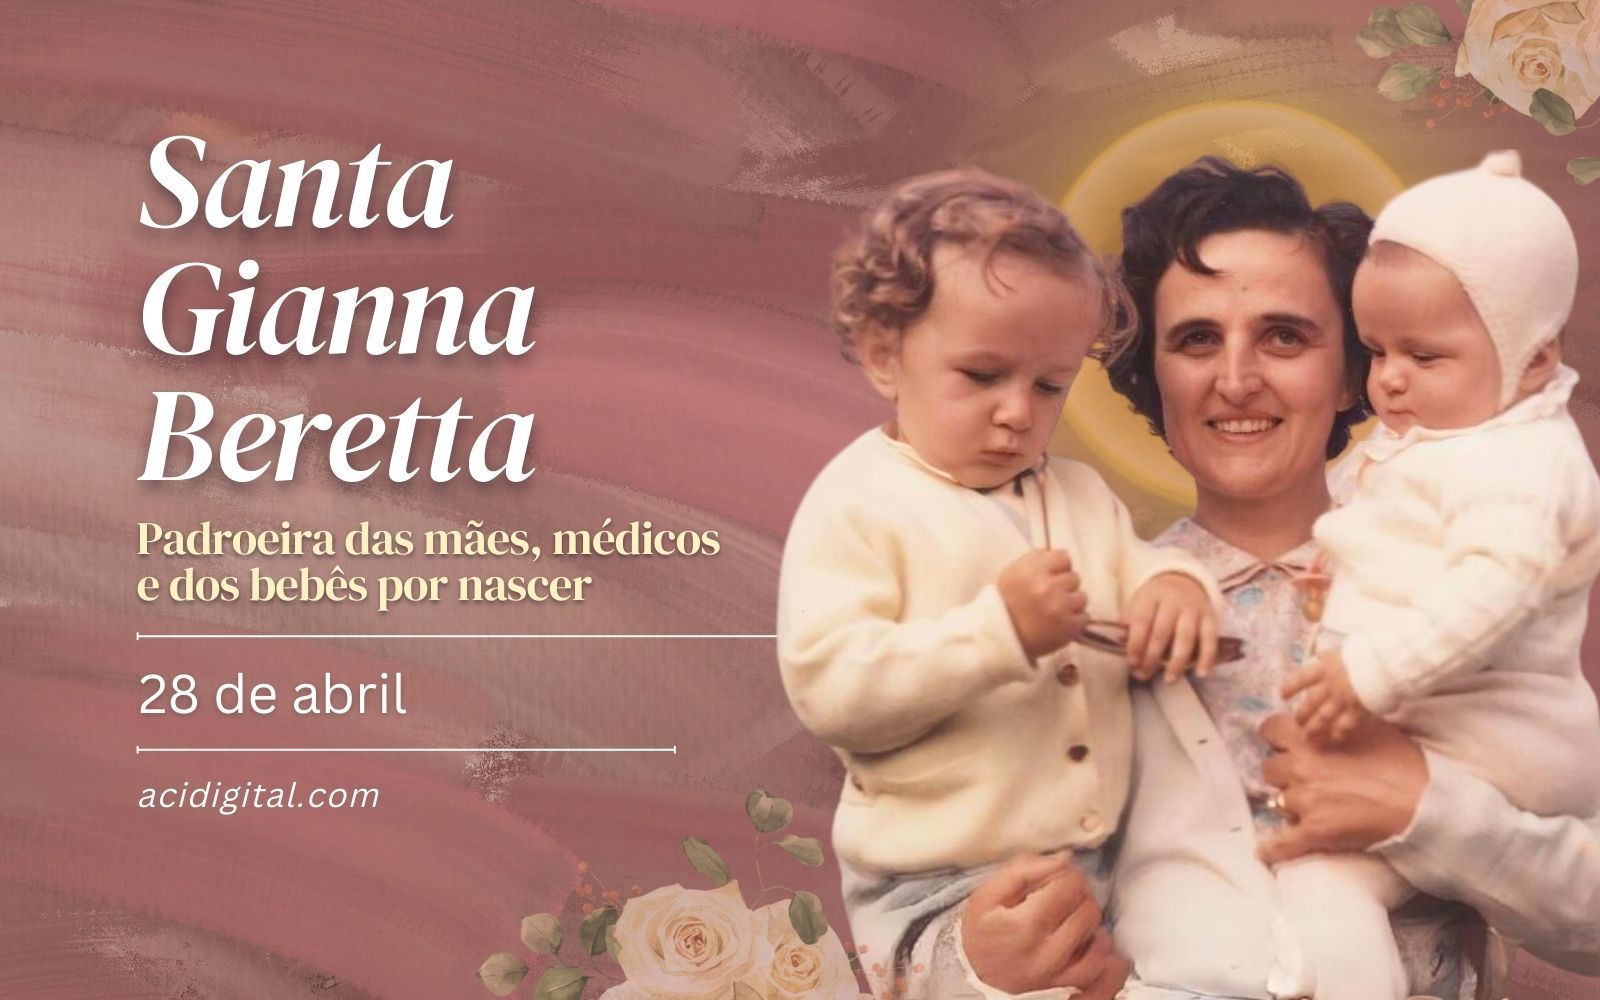  Igreja celebra hoje santa Gianna, padroeira das mães, médicos e crianças por nascer 